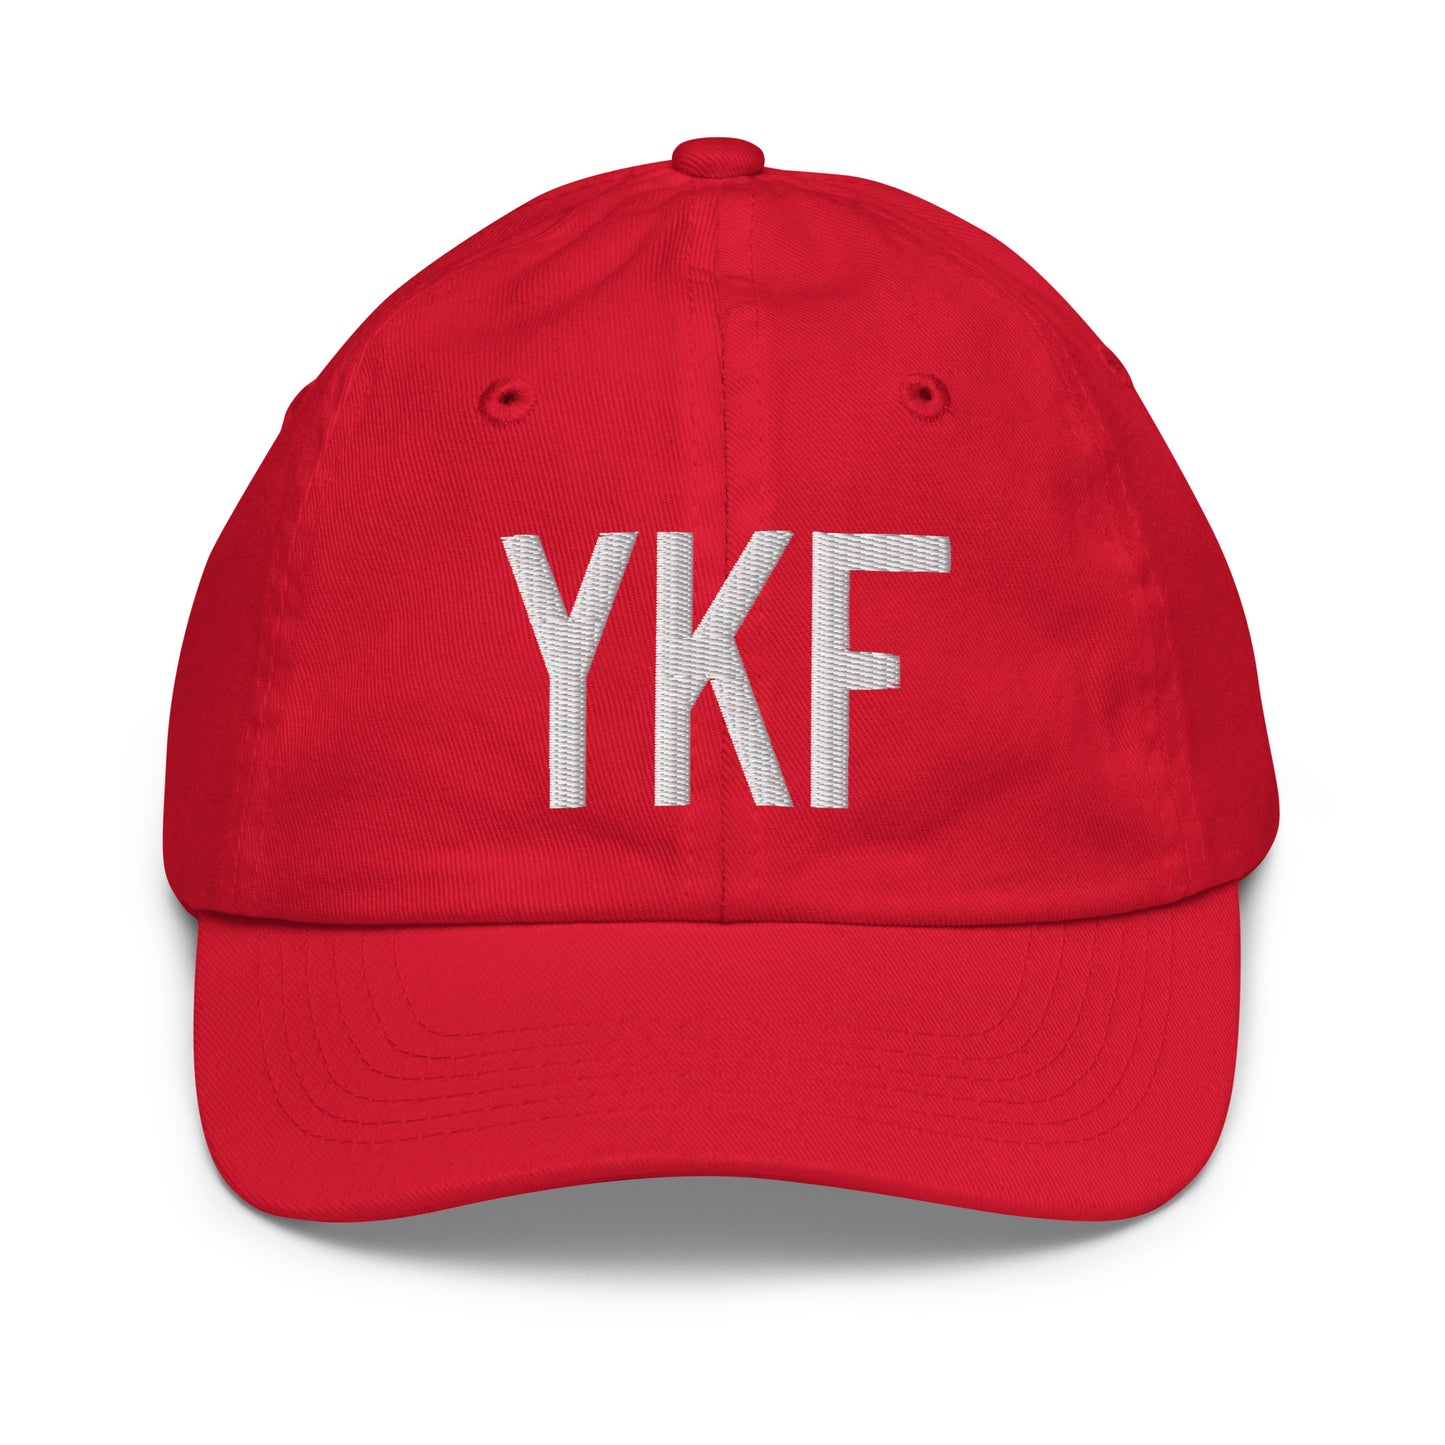 Airport Code Kid's Baseball Cap - White • YKF Waterloo • YHM Designs - Image 17